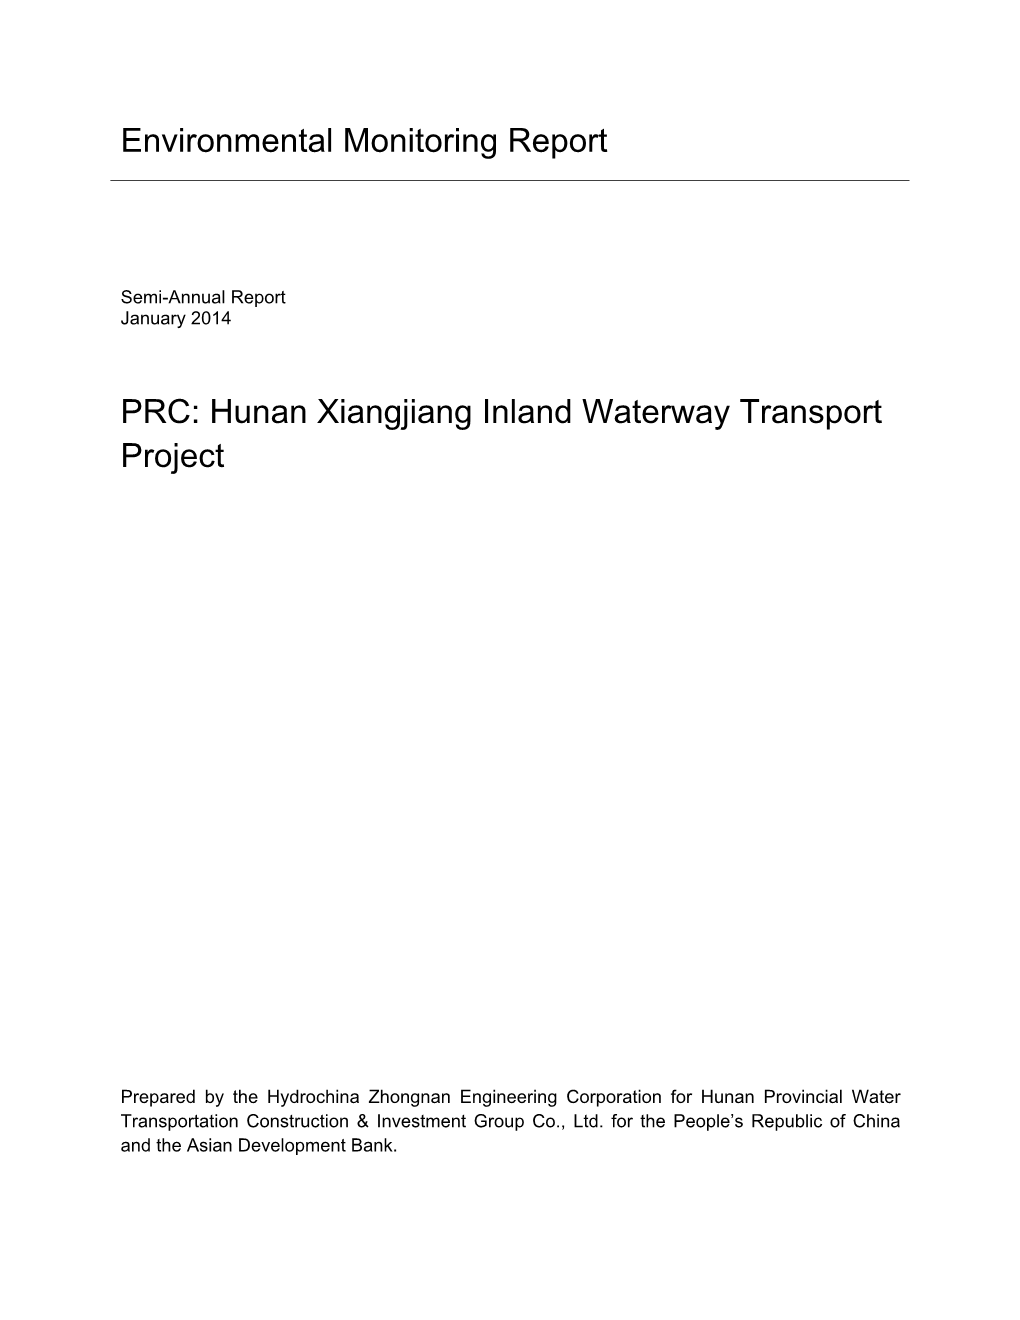 Environmental Monitoring Report PRC: Hunan Xiangjiang Inland